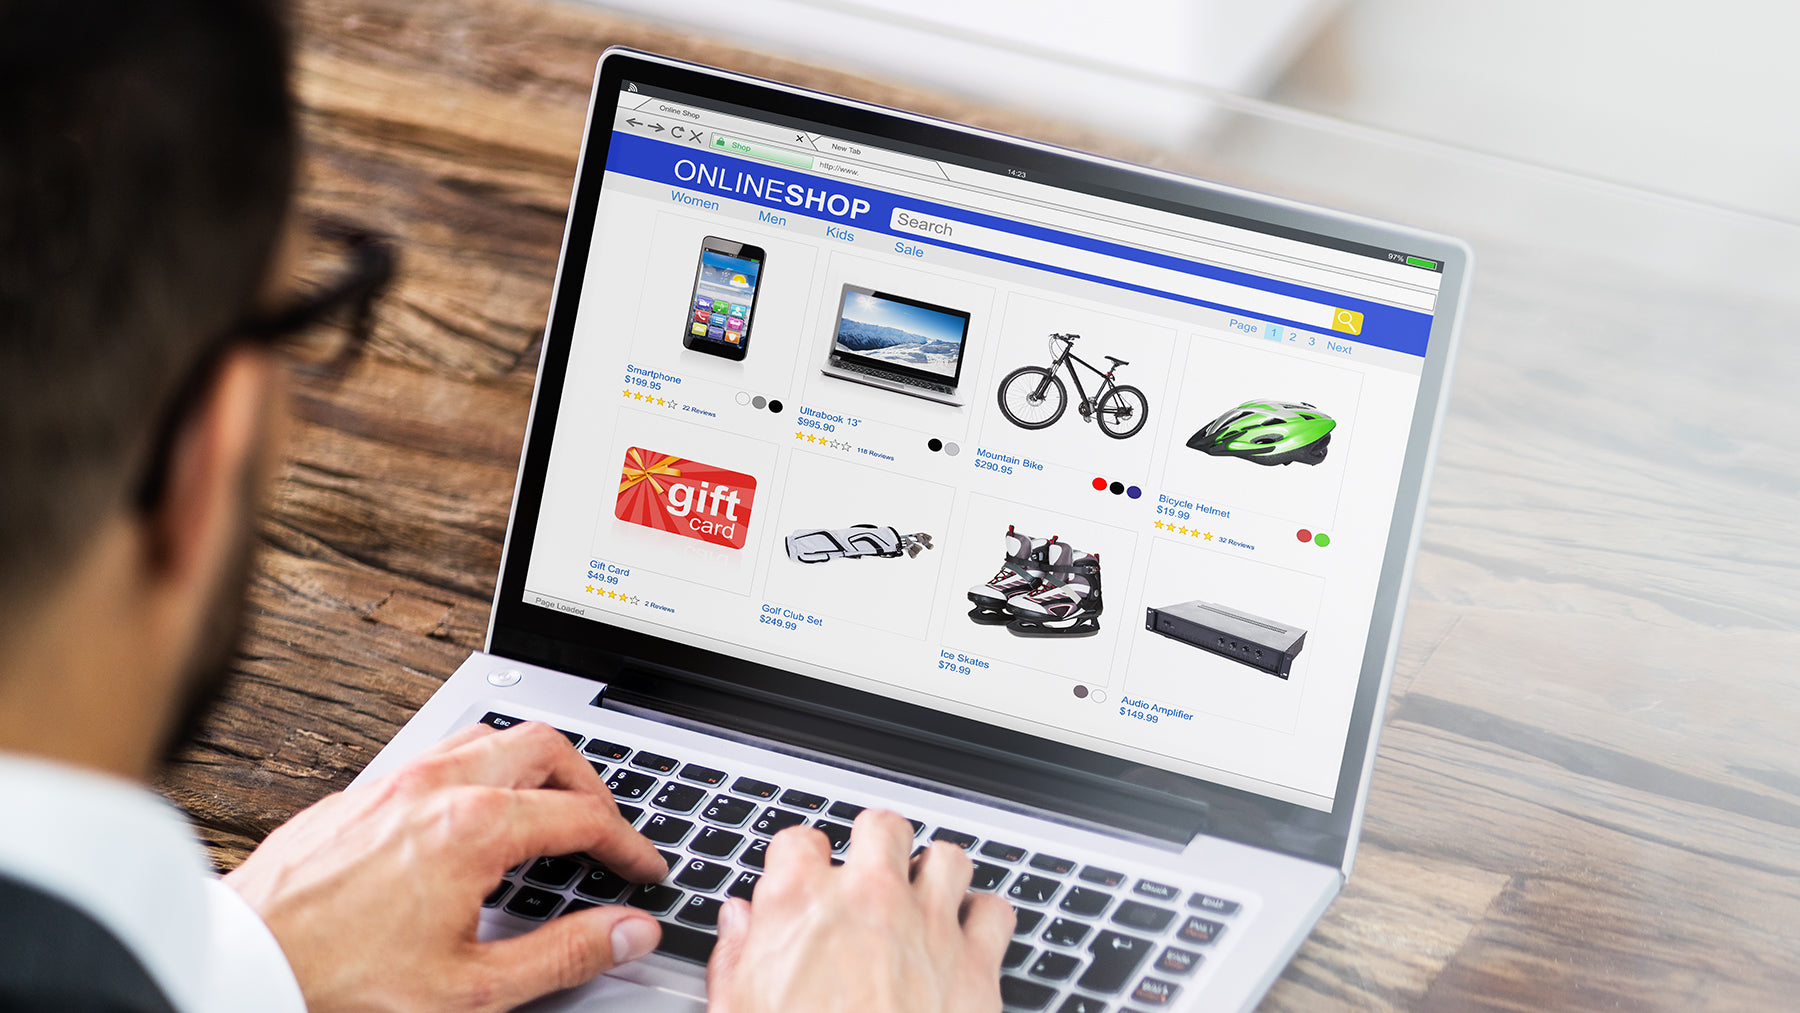 Hogyan vásárolj online biztonságosan? – Tippek, hogy elkerüld a csalásokat